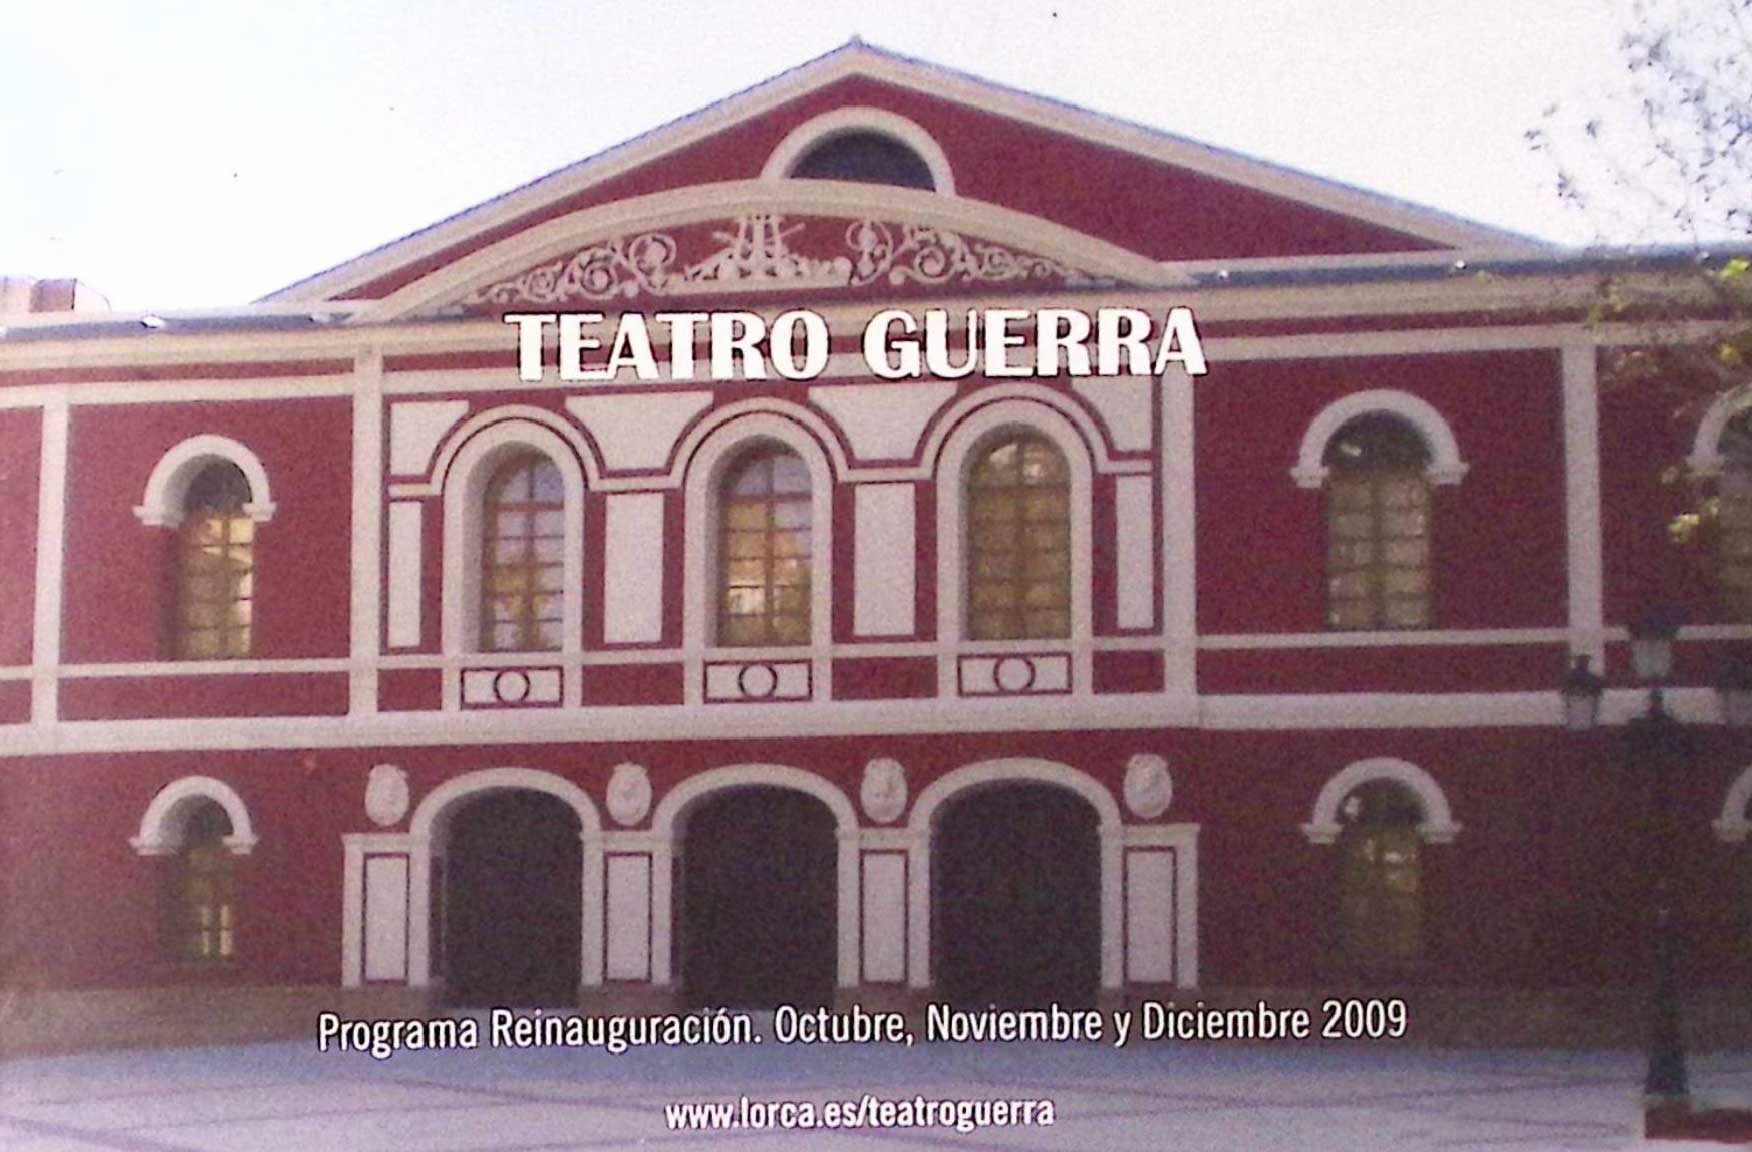 Teatro Guerra. Programa reinauguración octubre, noviembre y diciembre 2009